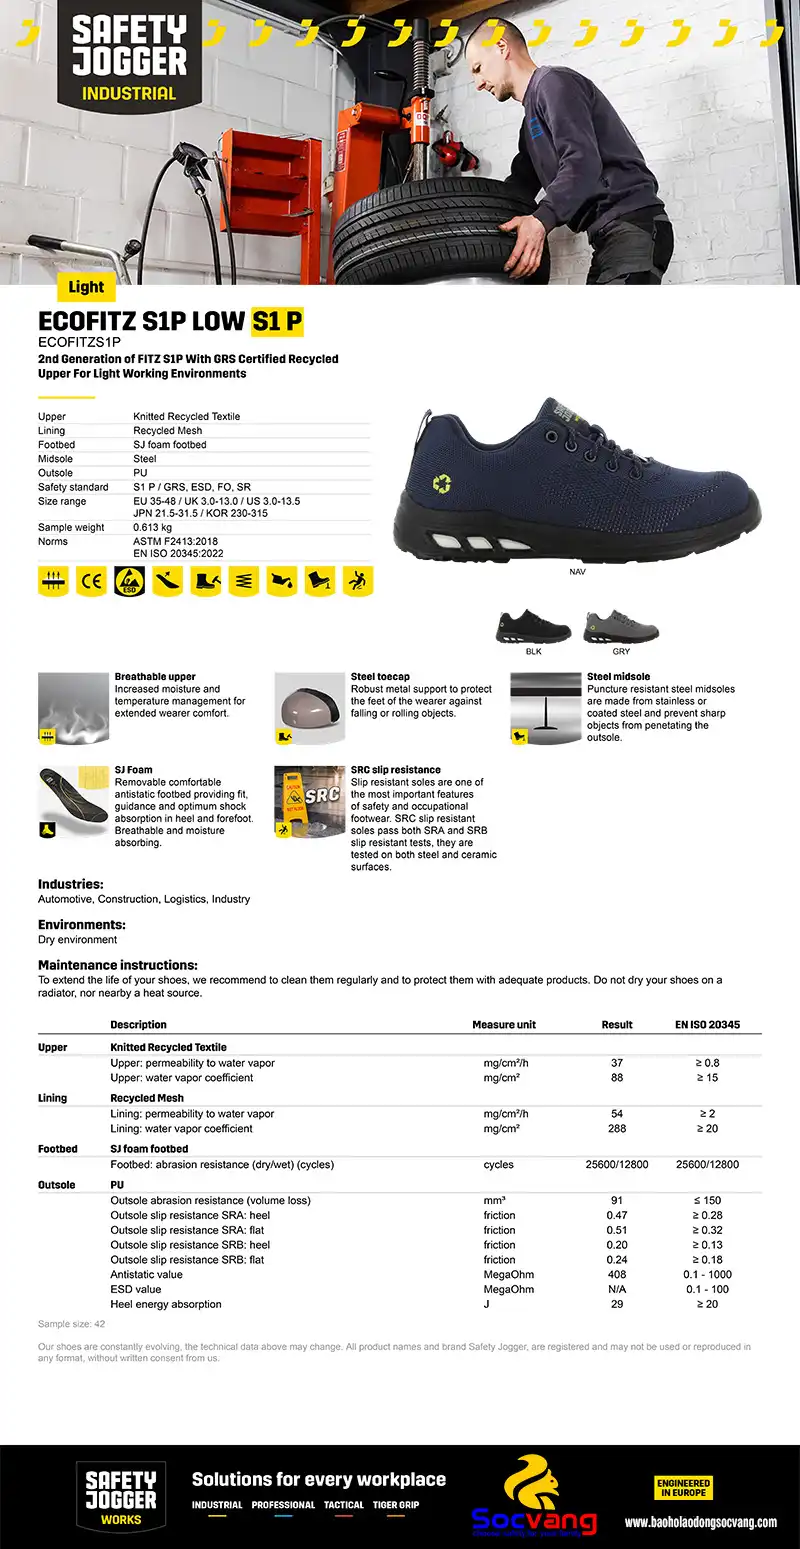 thông số giày bảo hộ Jogger Ecofitz low S1p